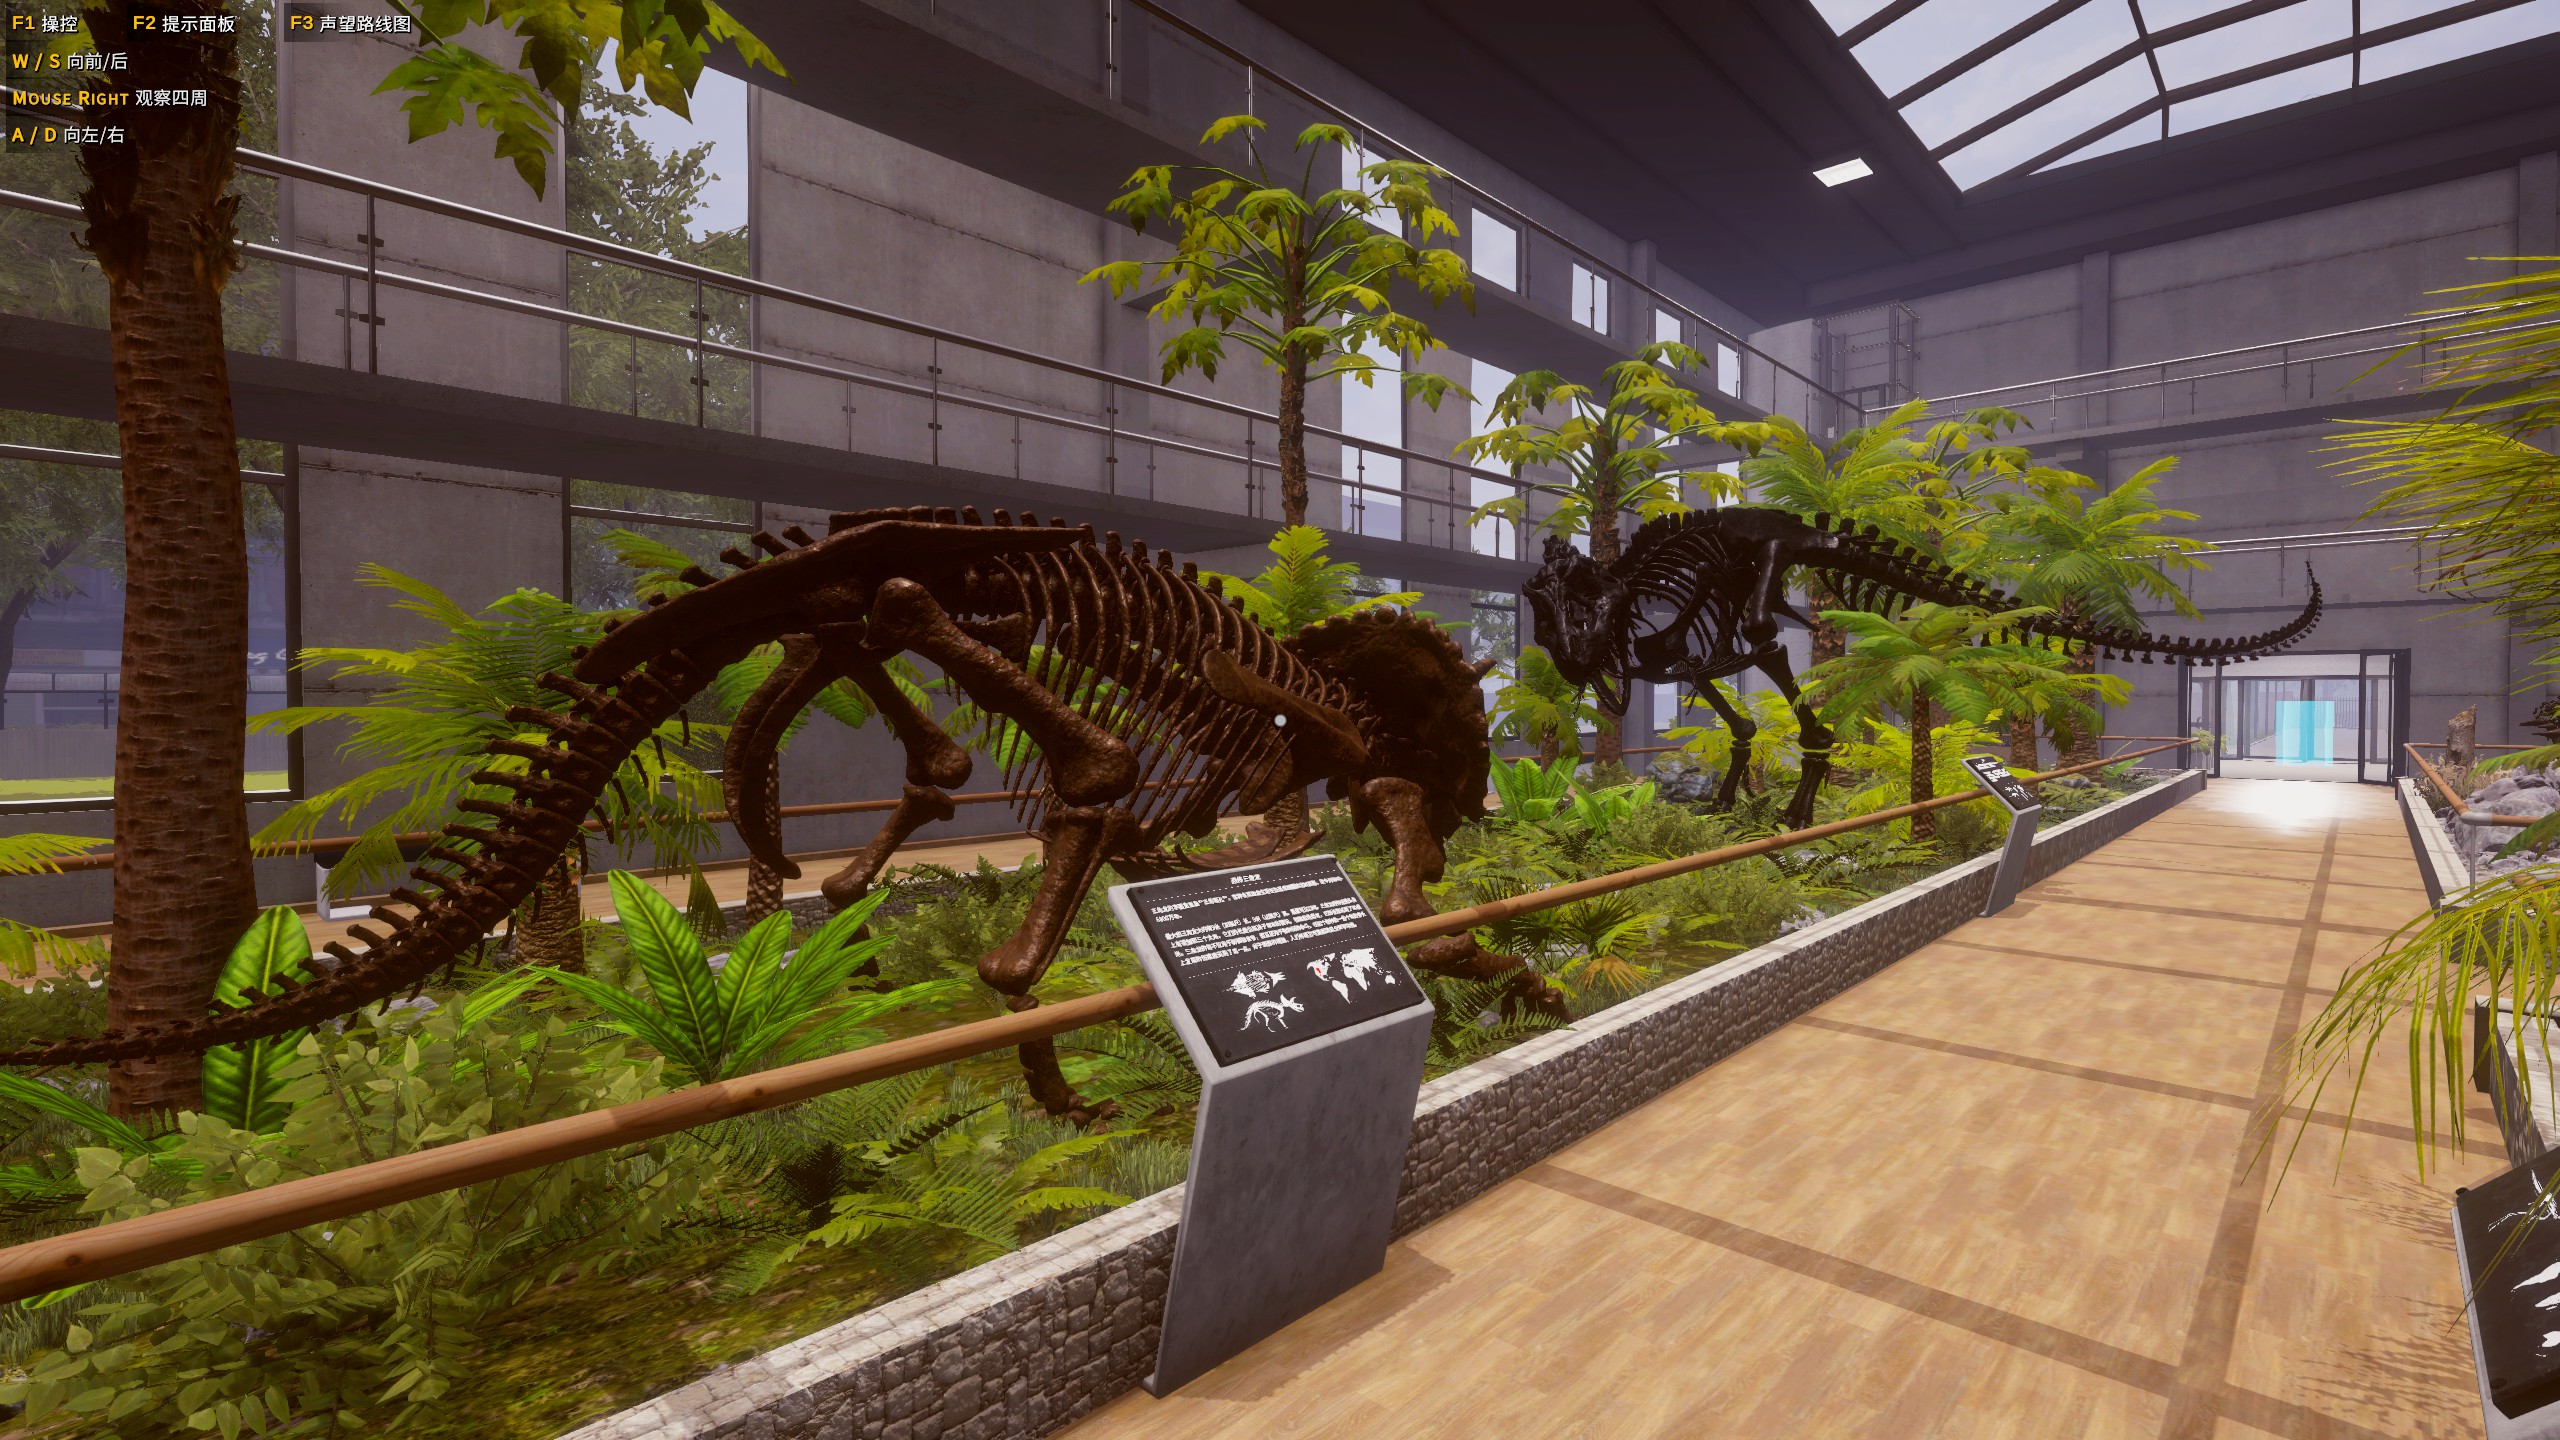 恐龙化石猎人 古生物学家模拟器游戏评测20220608005